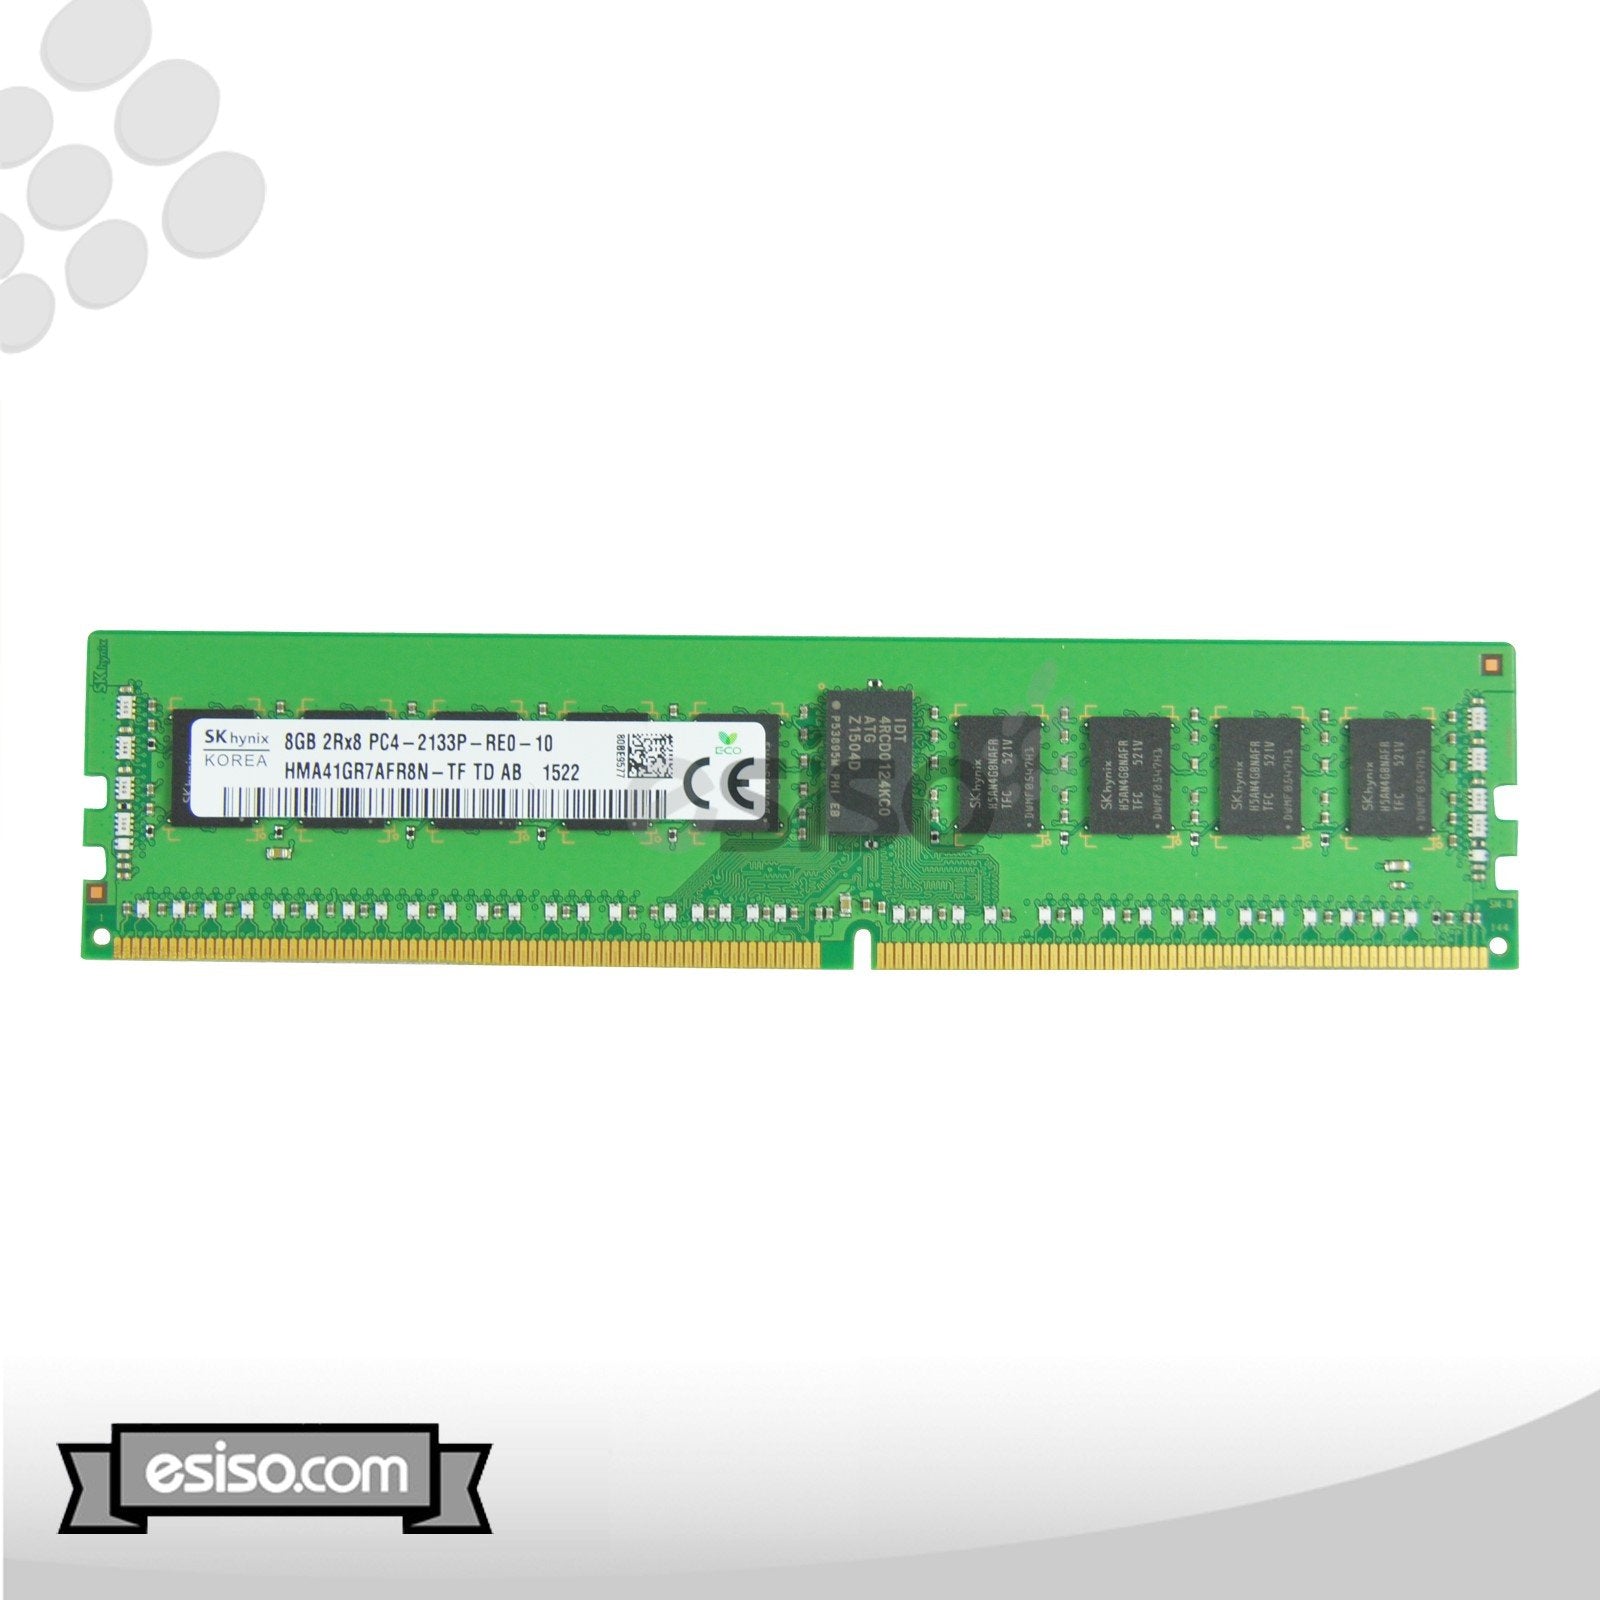 HMA41GR7AFR8N-TF HYNIX 8GB 2Rx8 PC4-2133P-R DDR4 1.2V MEMORY MODULE (1x8GB)